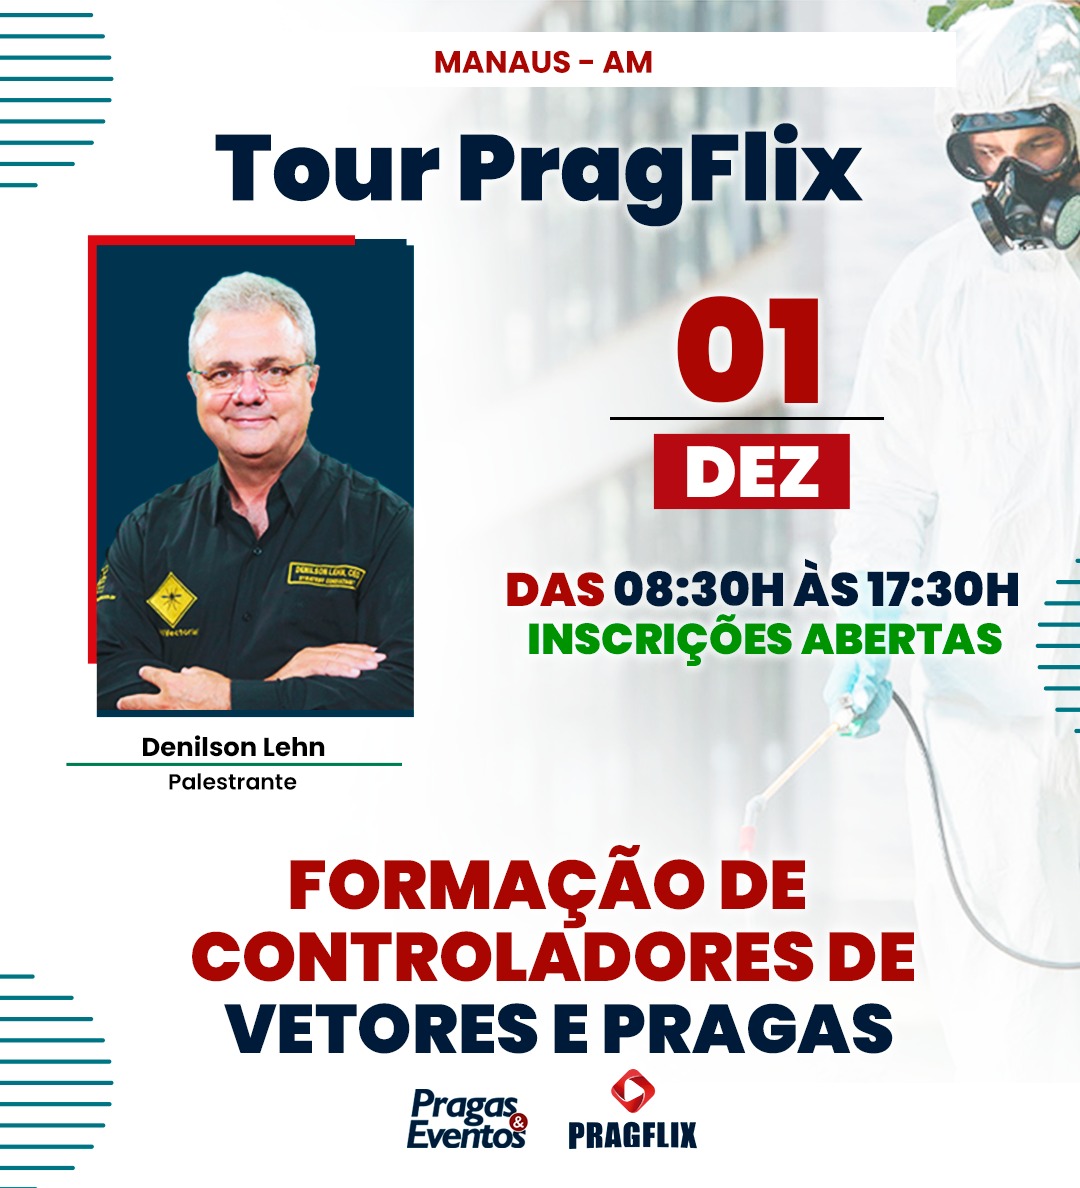 Tour Pragflix - Manaus